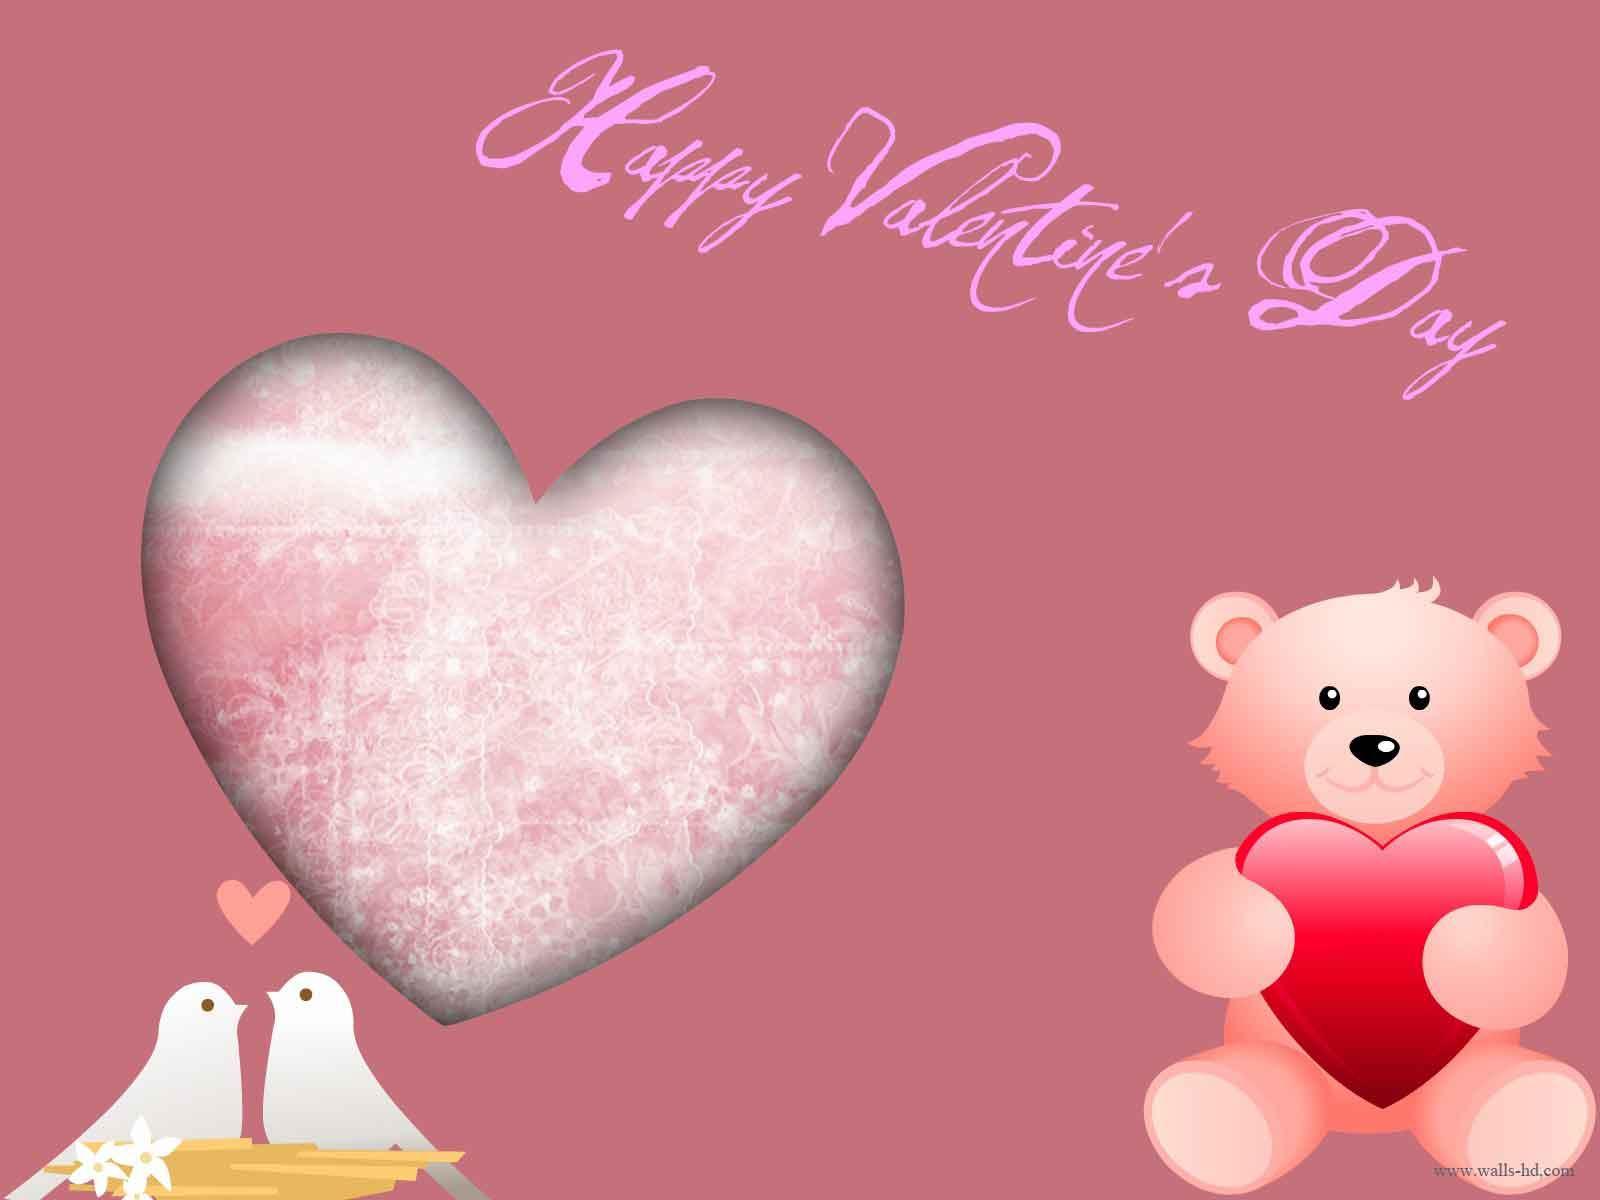 Cute teddy Wallpaper free Cute teddy Valentines Day